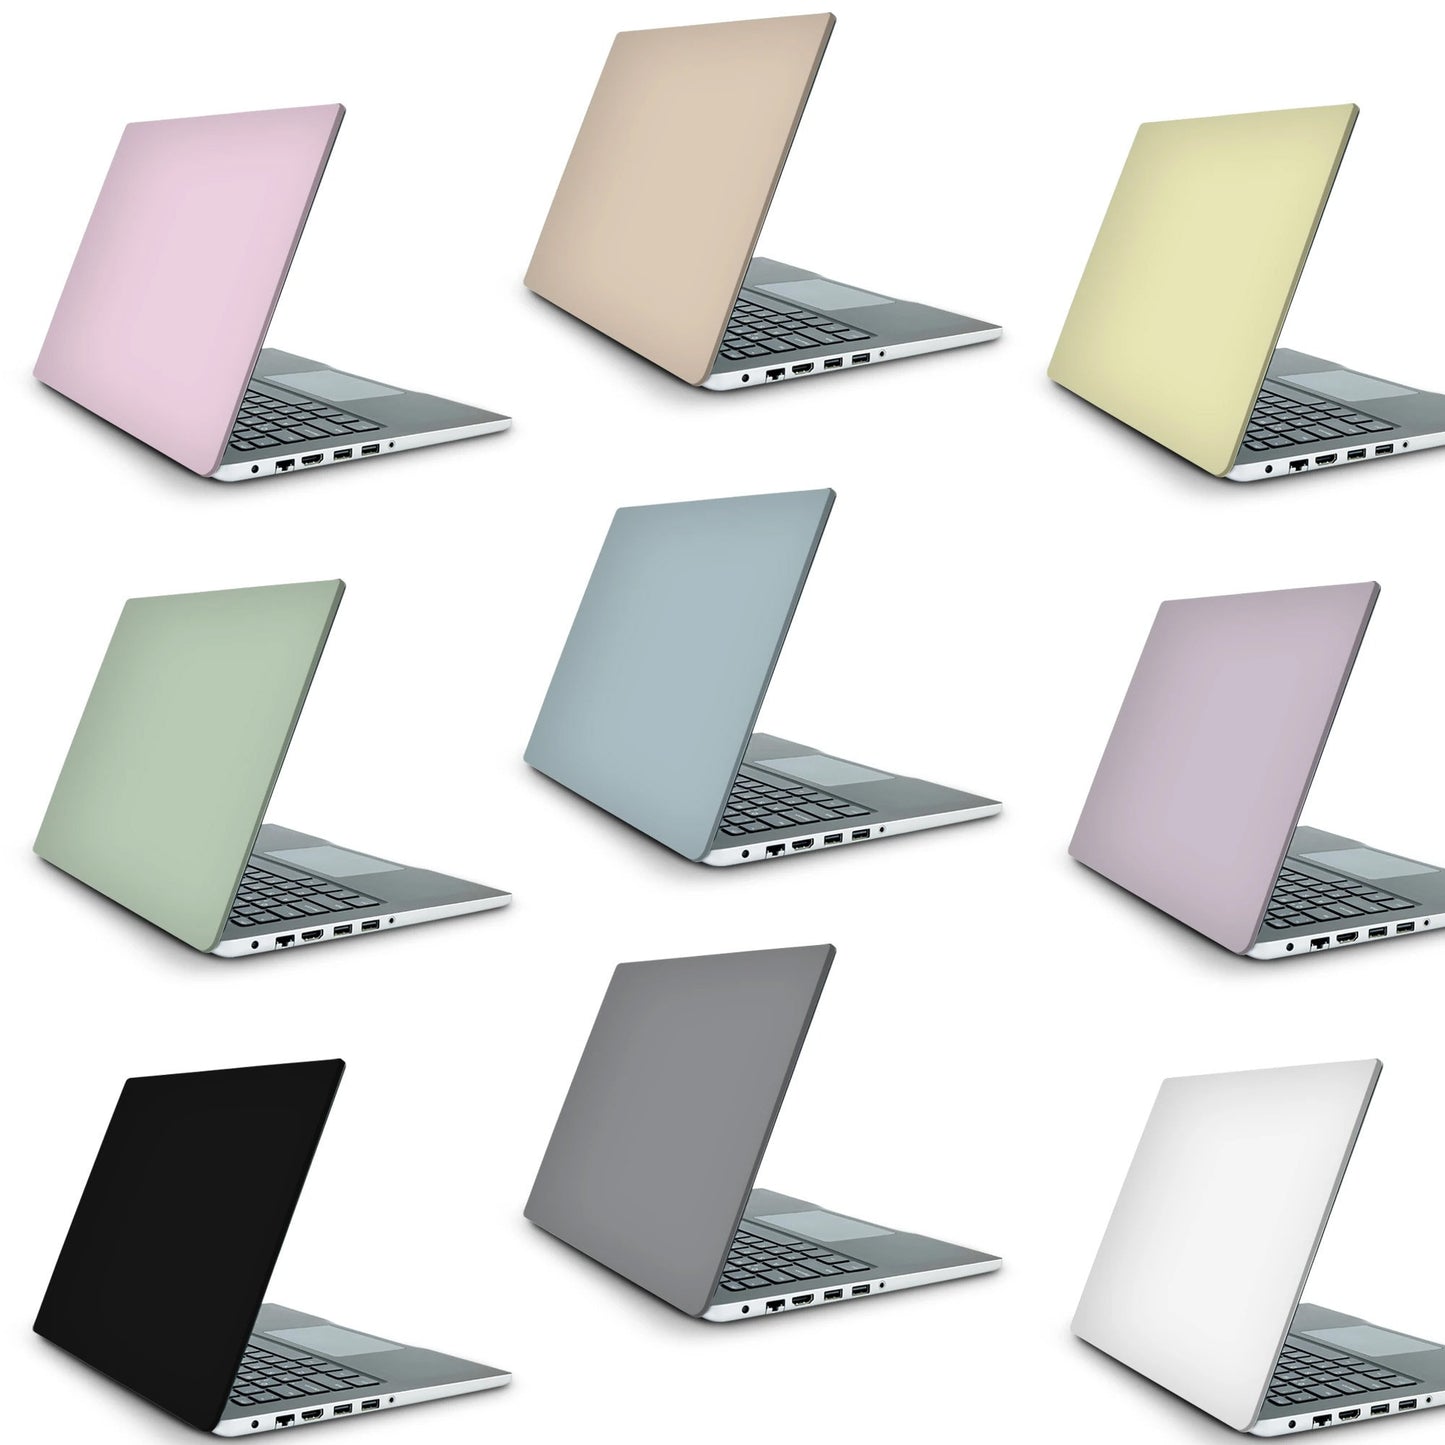 Bird Mccaw Laptop Skin, Laptop Cover, Laptop Skins, Removable Laptop Skins, Laptop Decal, Customized Laptop Skin, Laptop Stickers 371